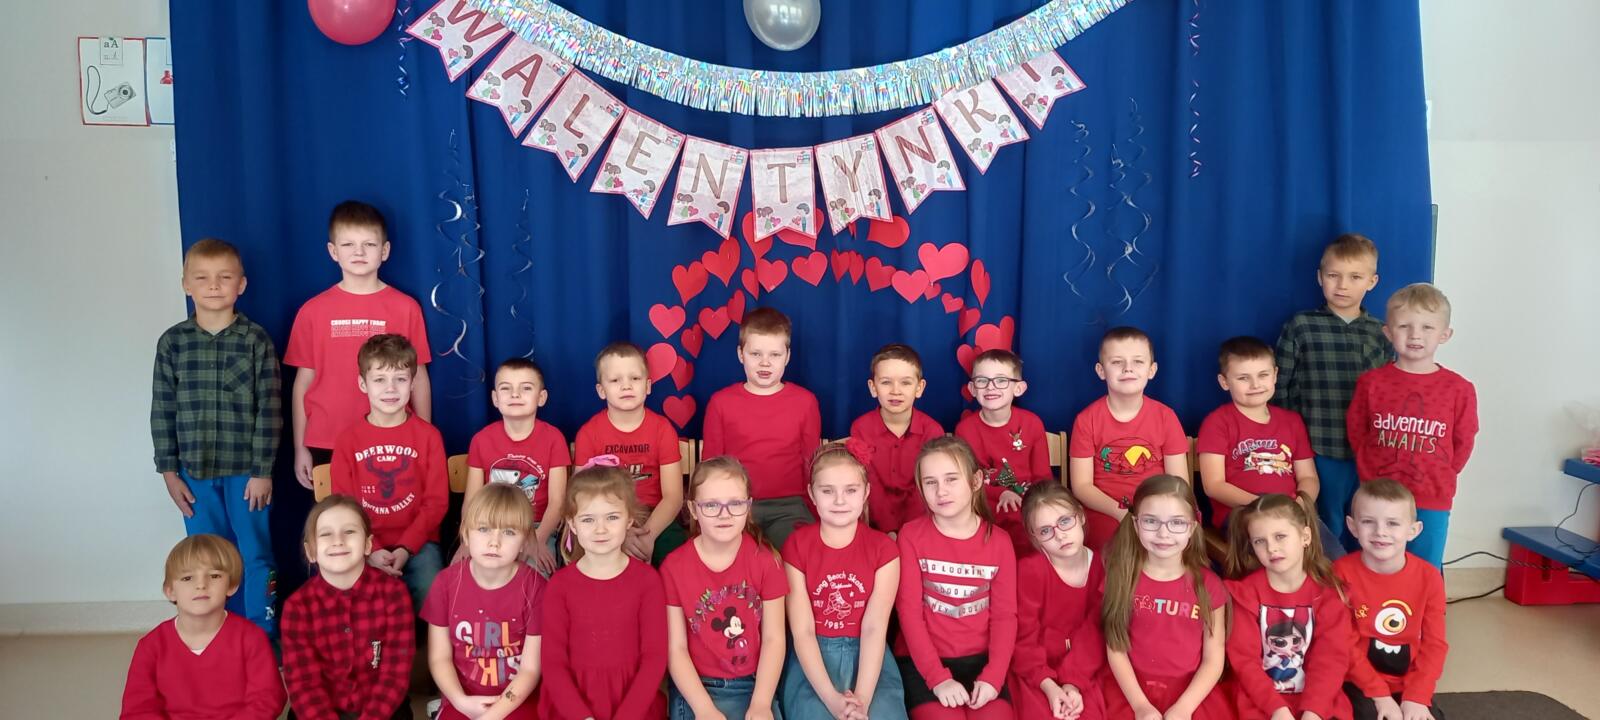 Grupa Delfinki pozuje do zdjęcia ubrana na kolor czerwony, w tle dzieci napis "Walentynki" oraz dekoracja serduszek.